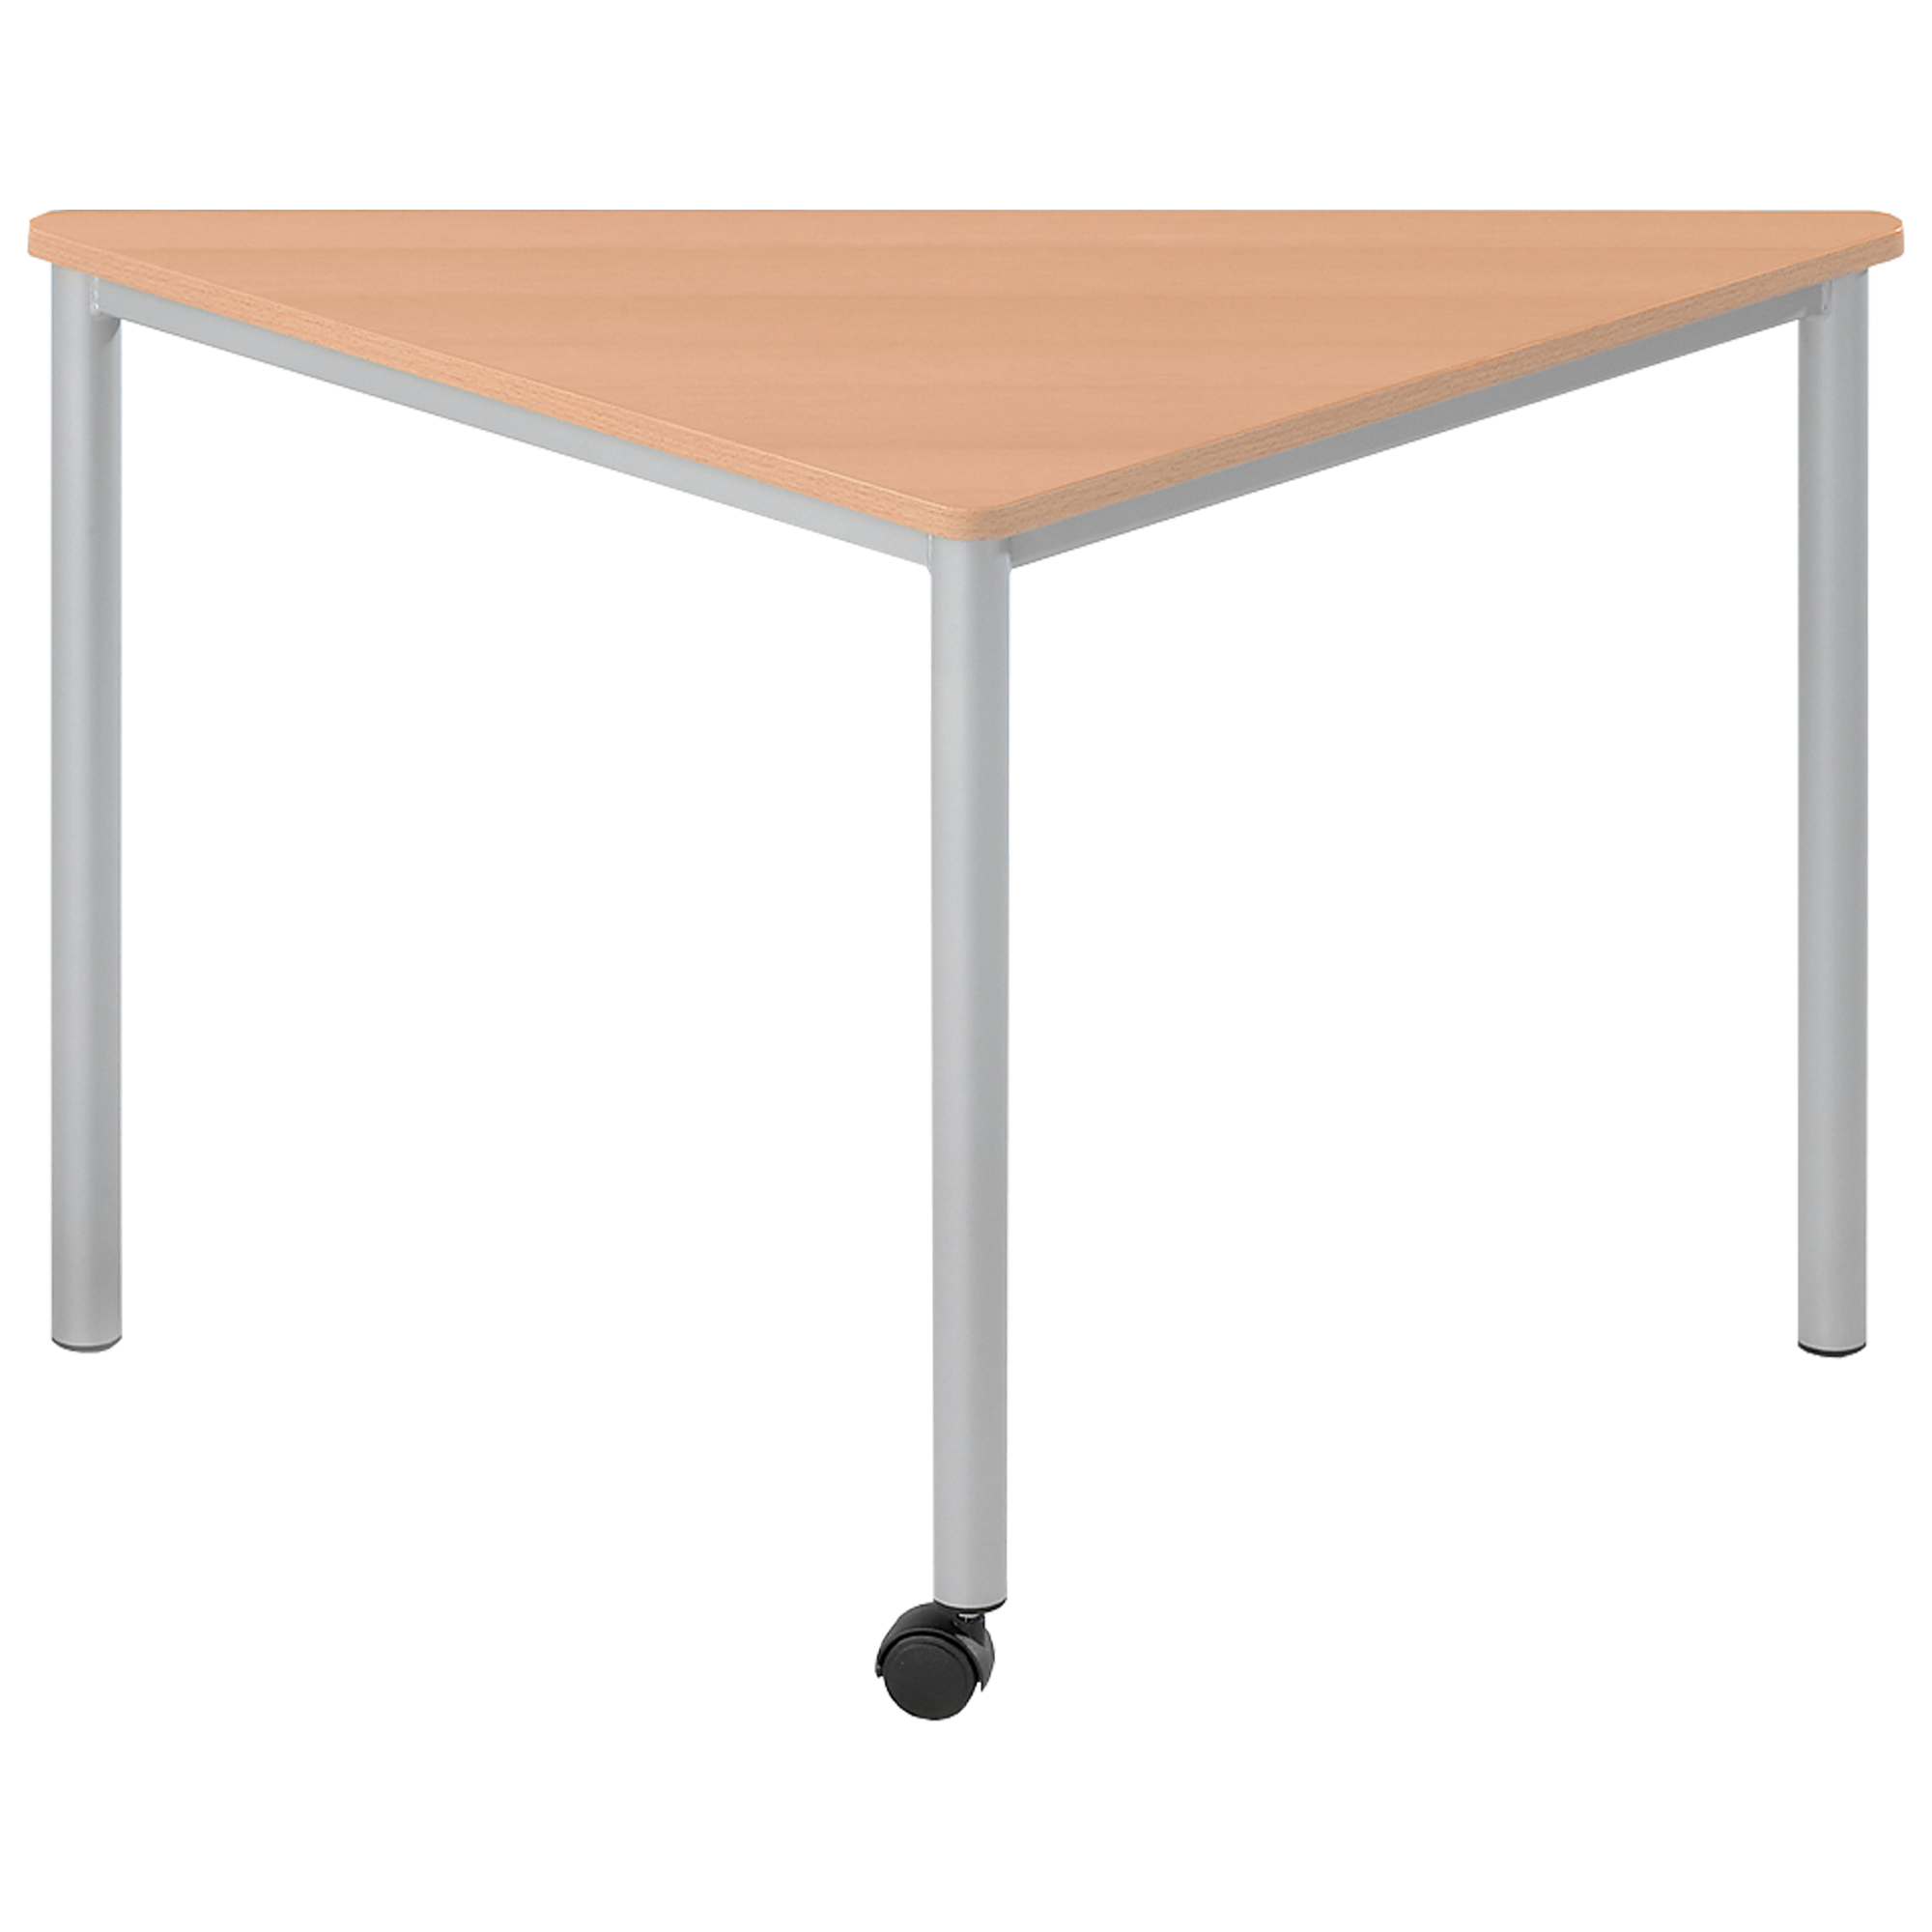 Verrijdbare driehoekige tafel uit de serie Vari² met tafelblad met melamineharscoating